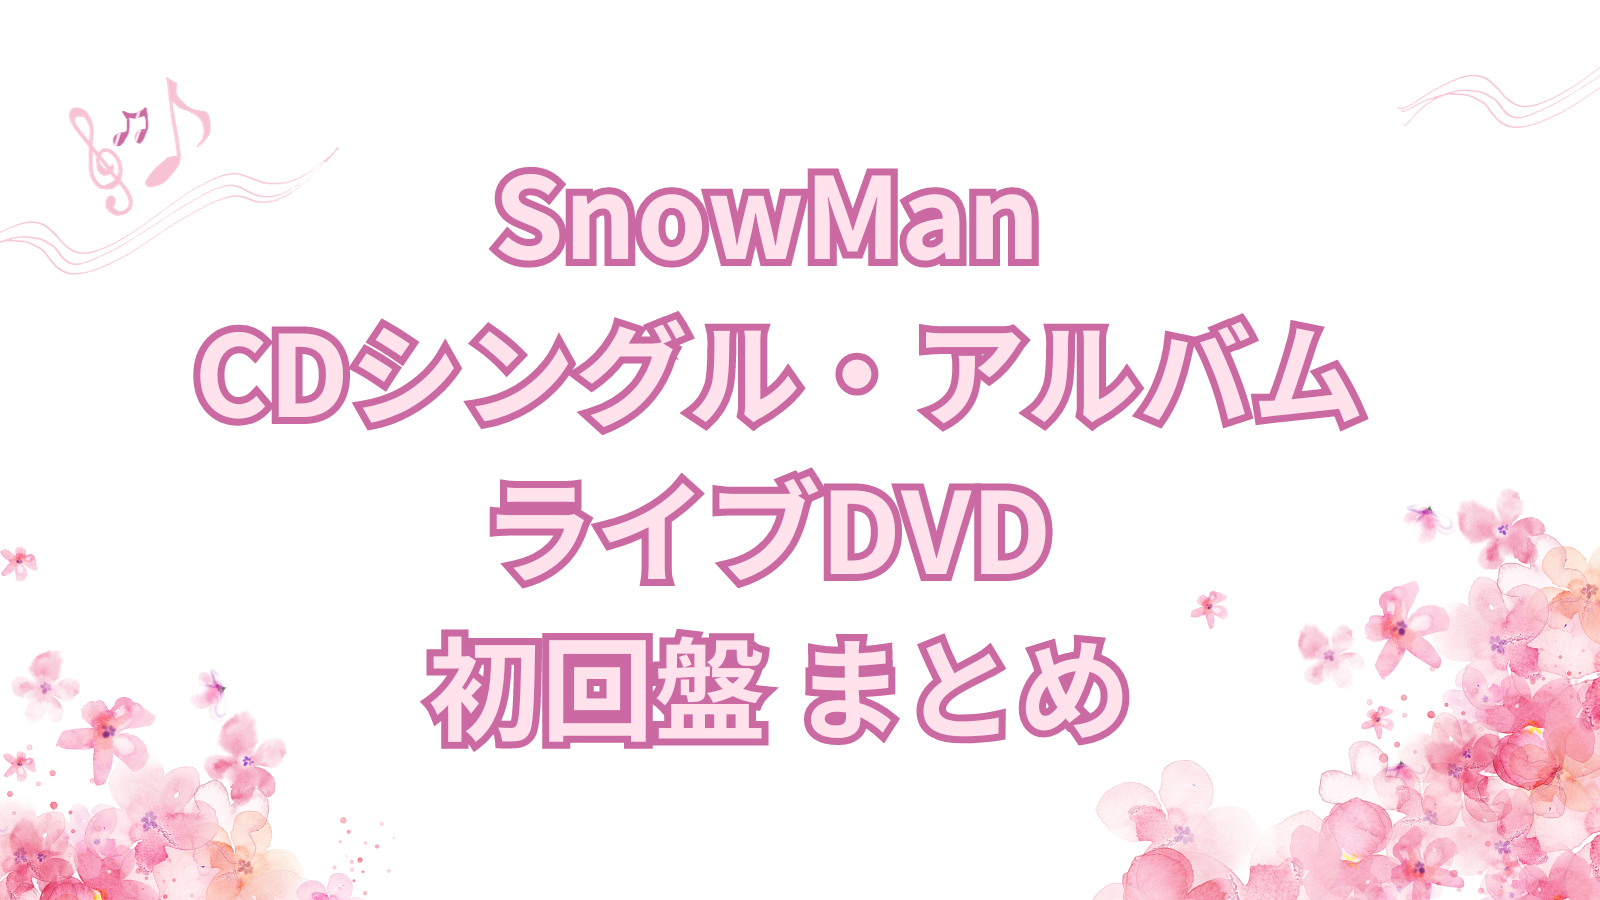 SnowMan CD DVD シングル